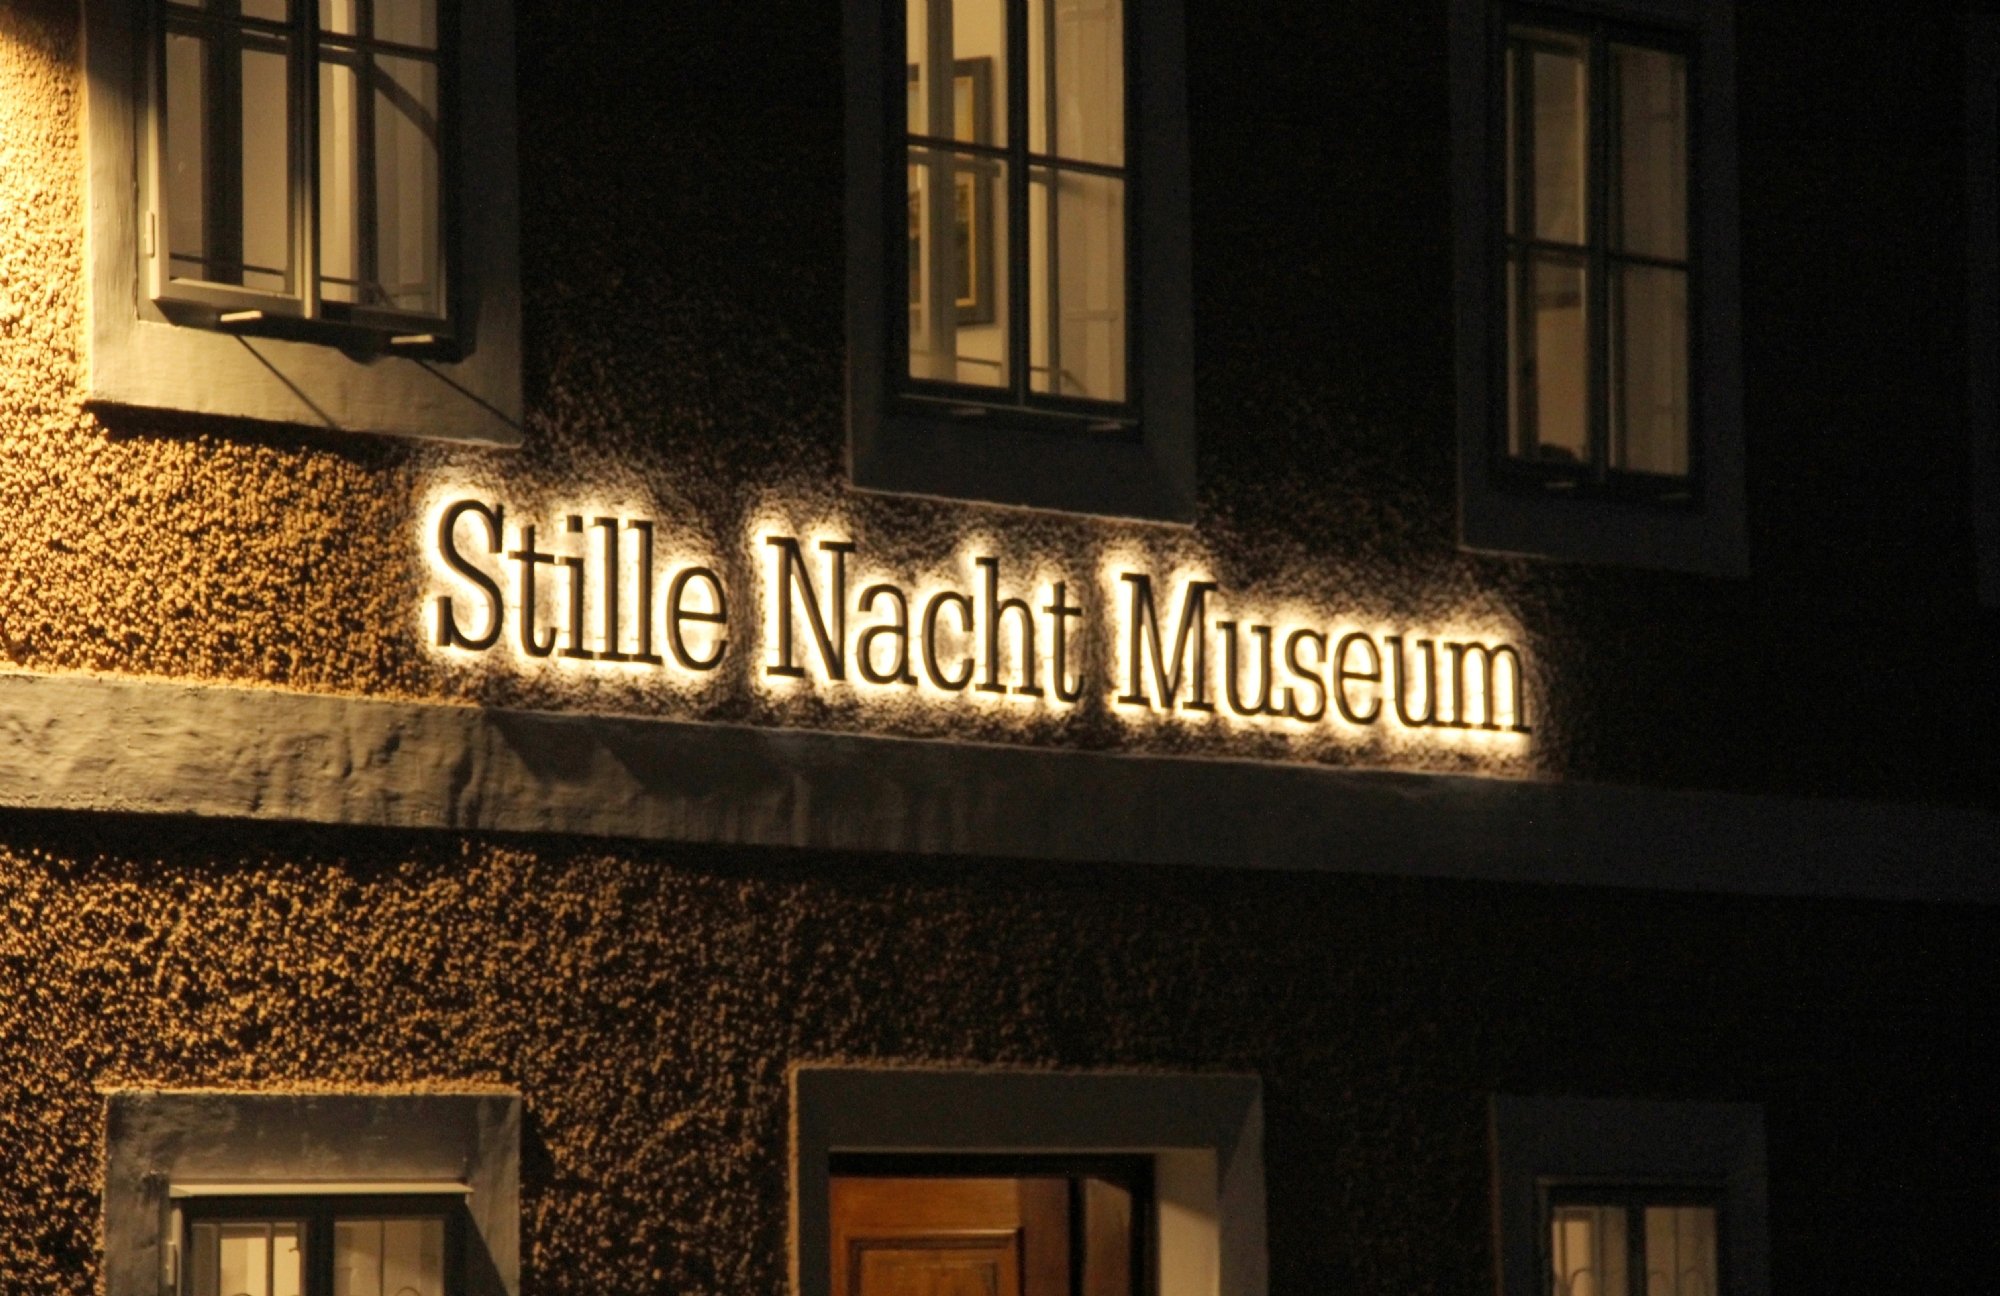 Stille Nacht Museum